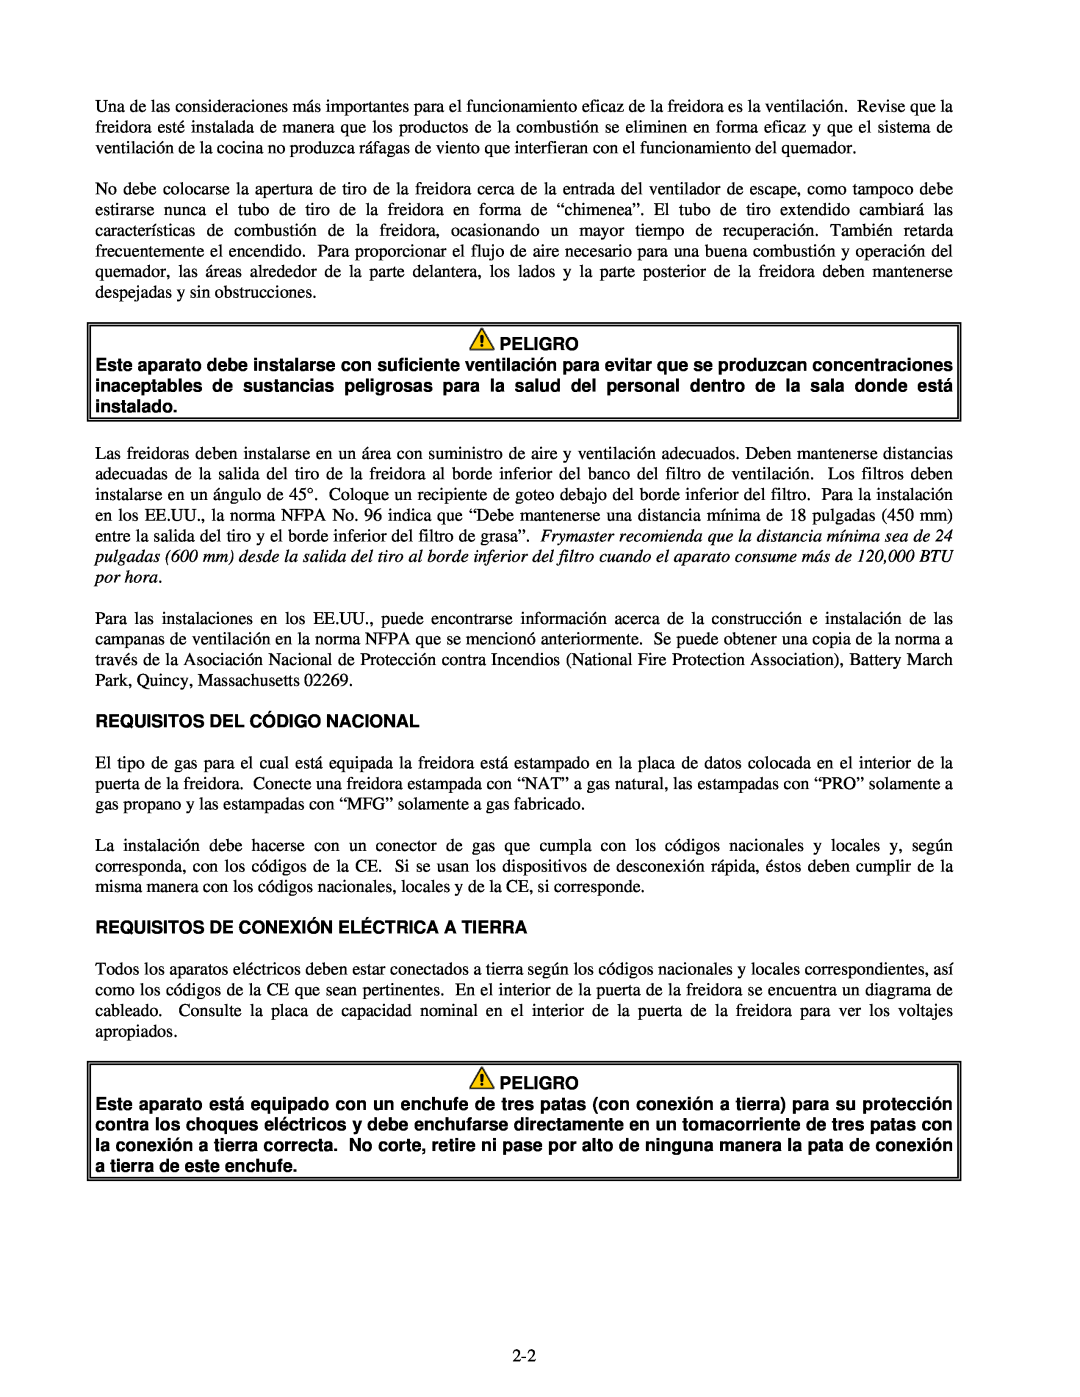 Frymaster H55 manual Requisitos Del Código Nacional, Requisitos De Conexión Eléctrica A Tierra, Peligro 